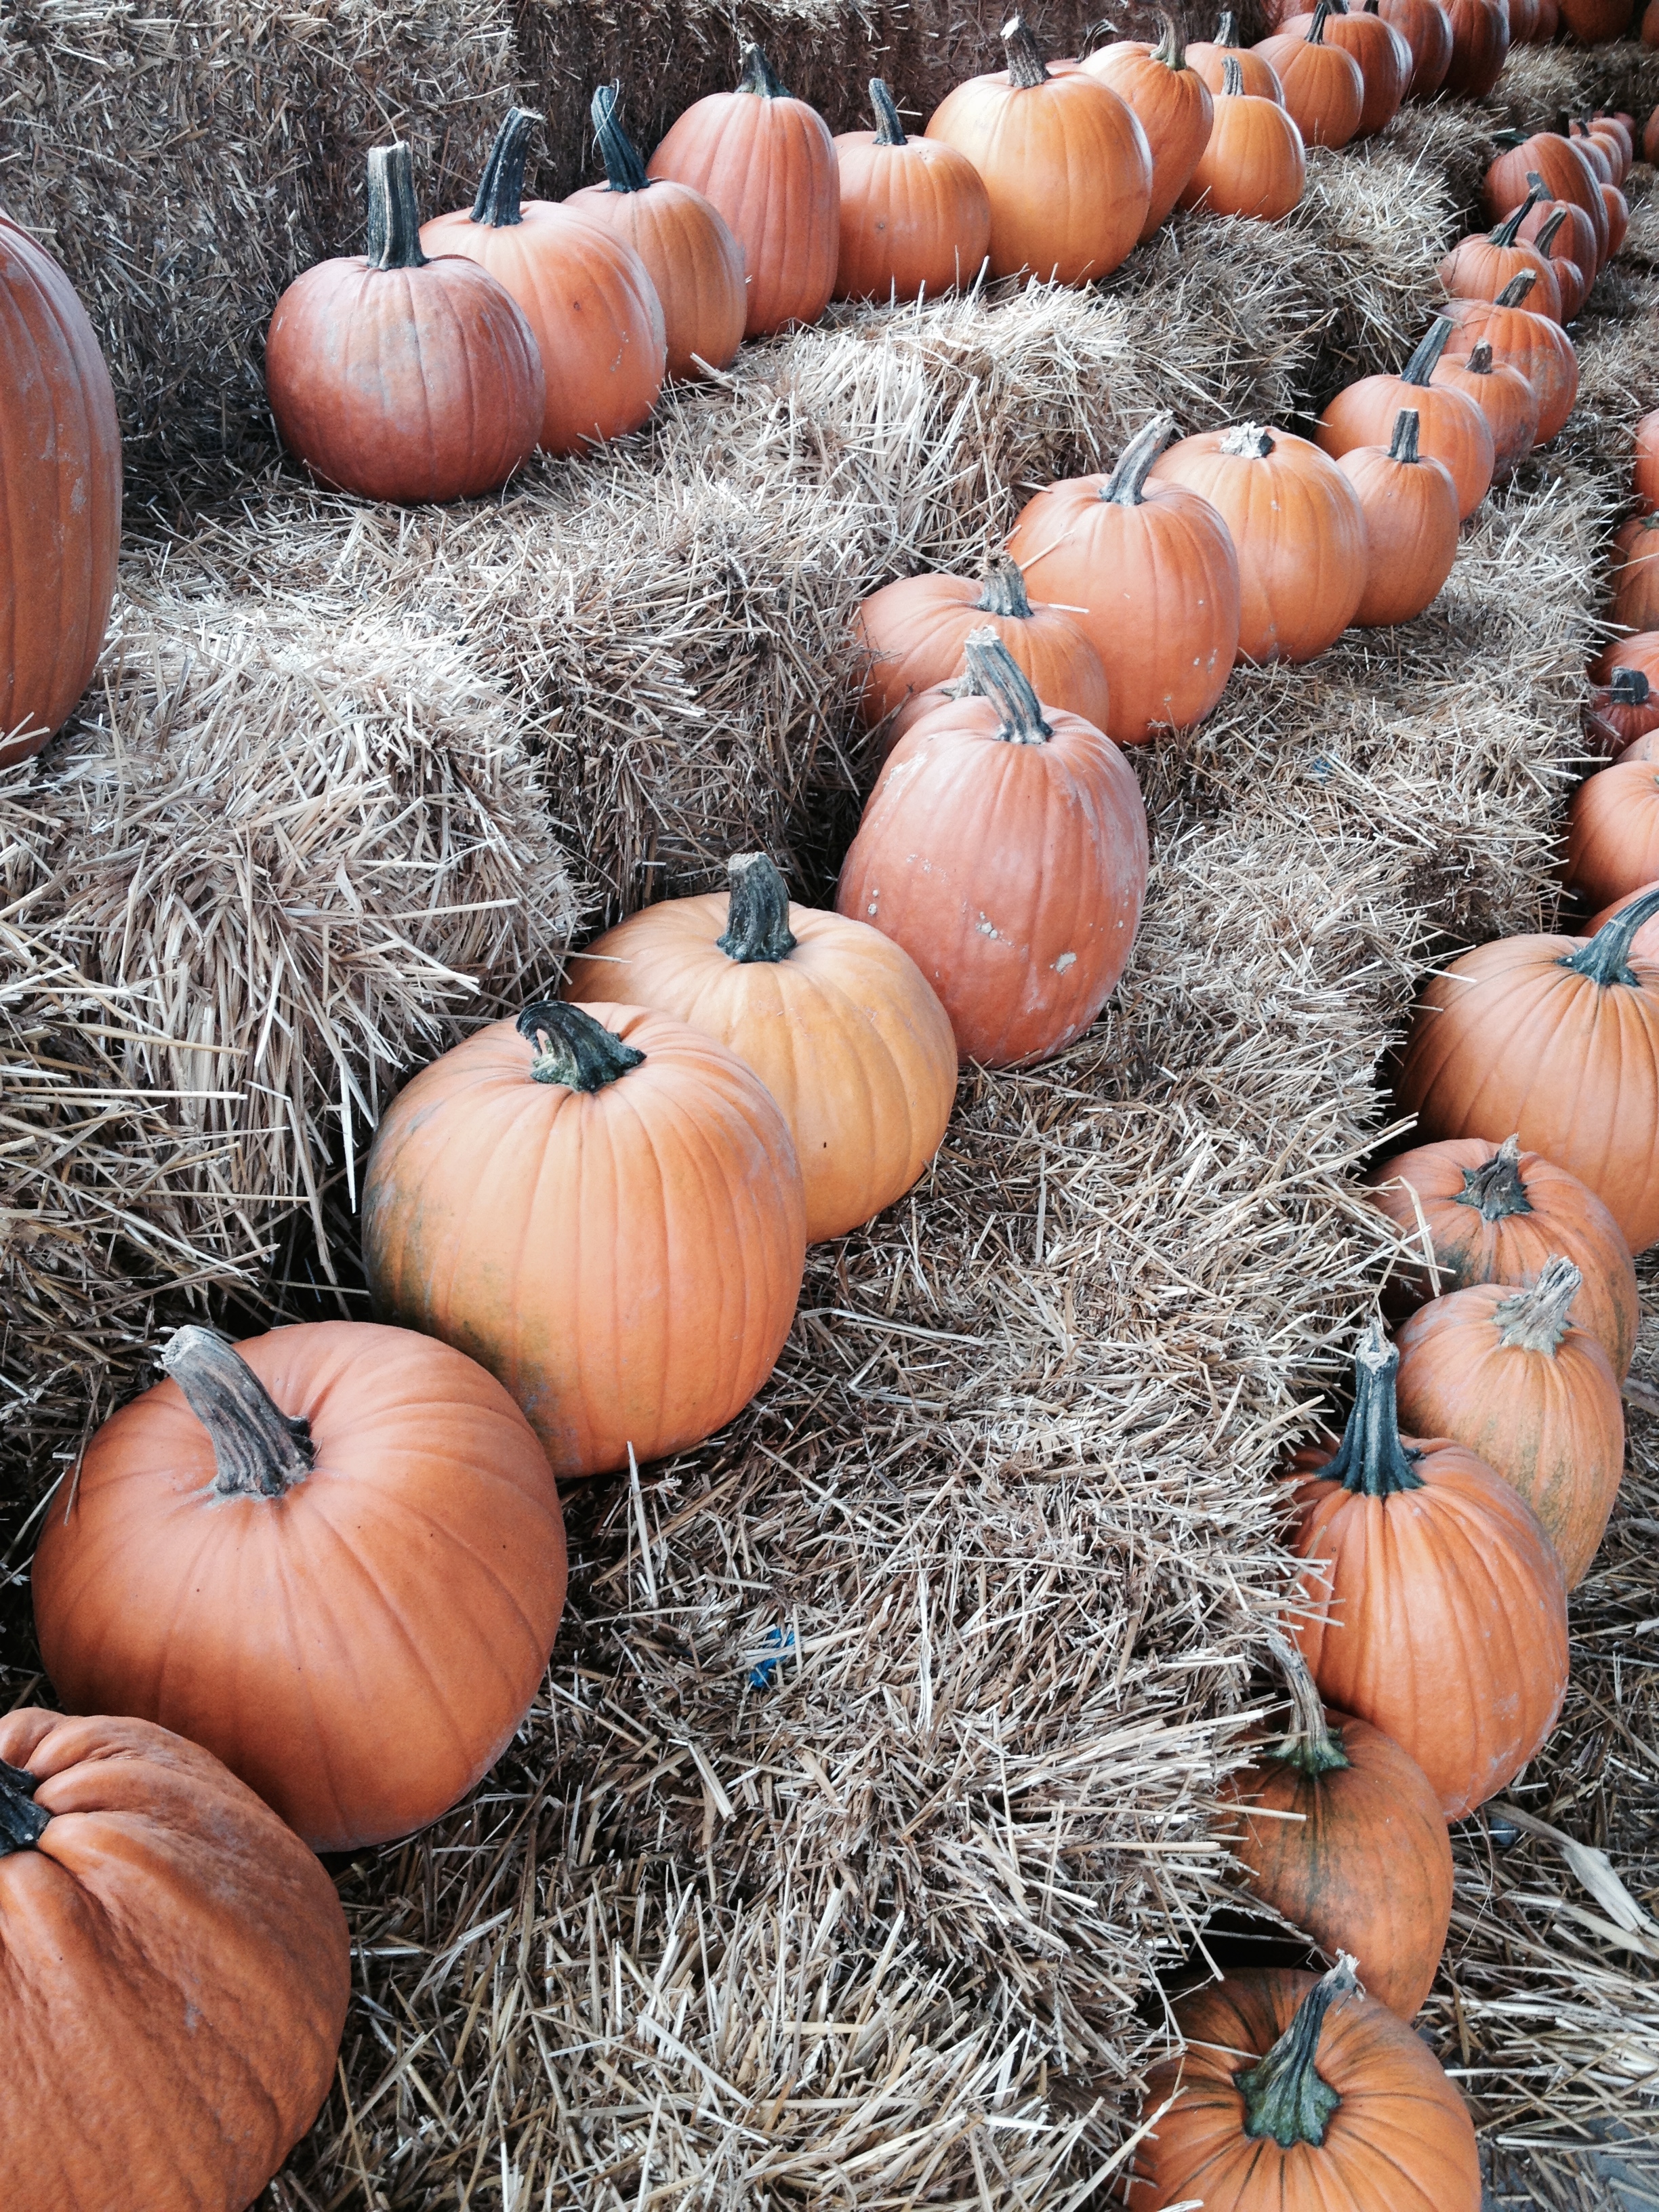 Lots of pumpkins!